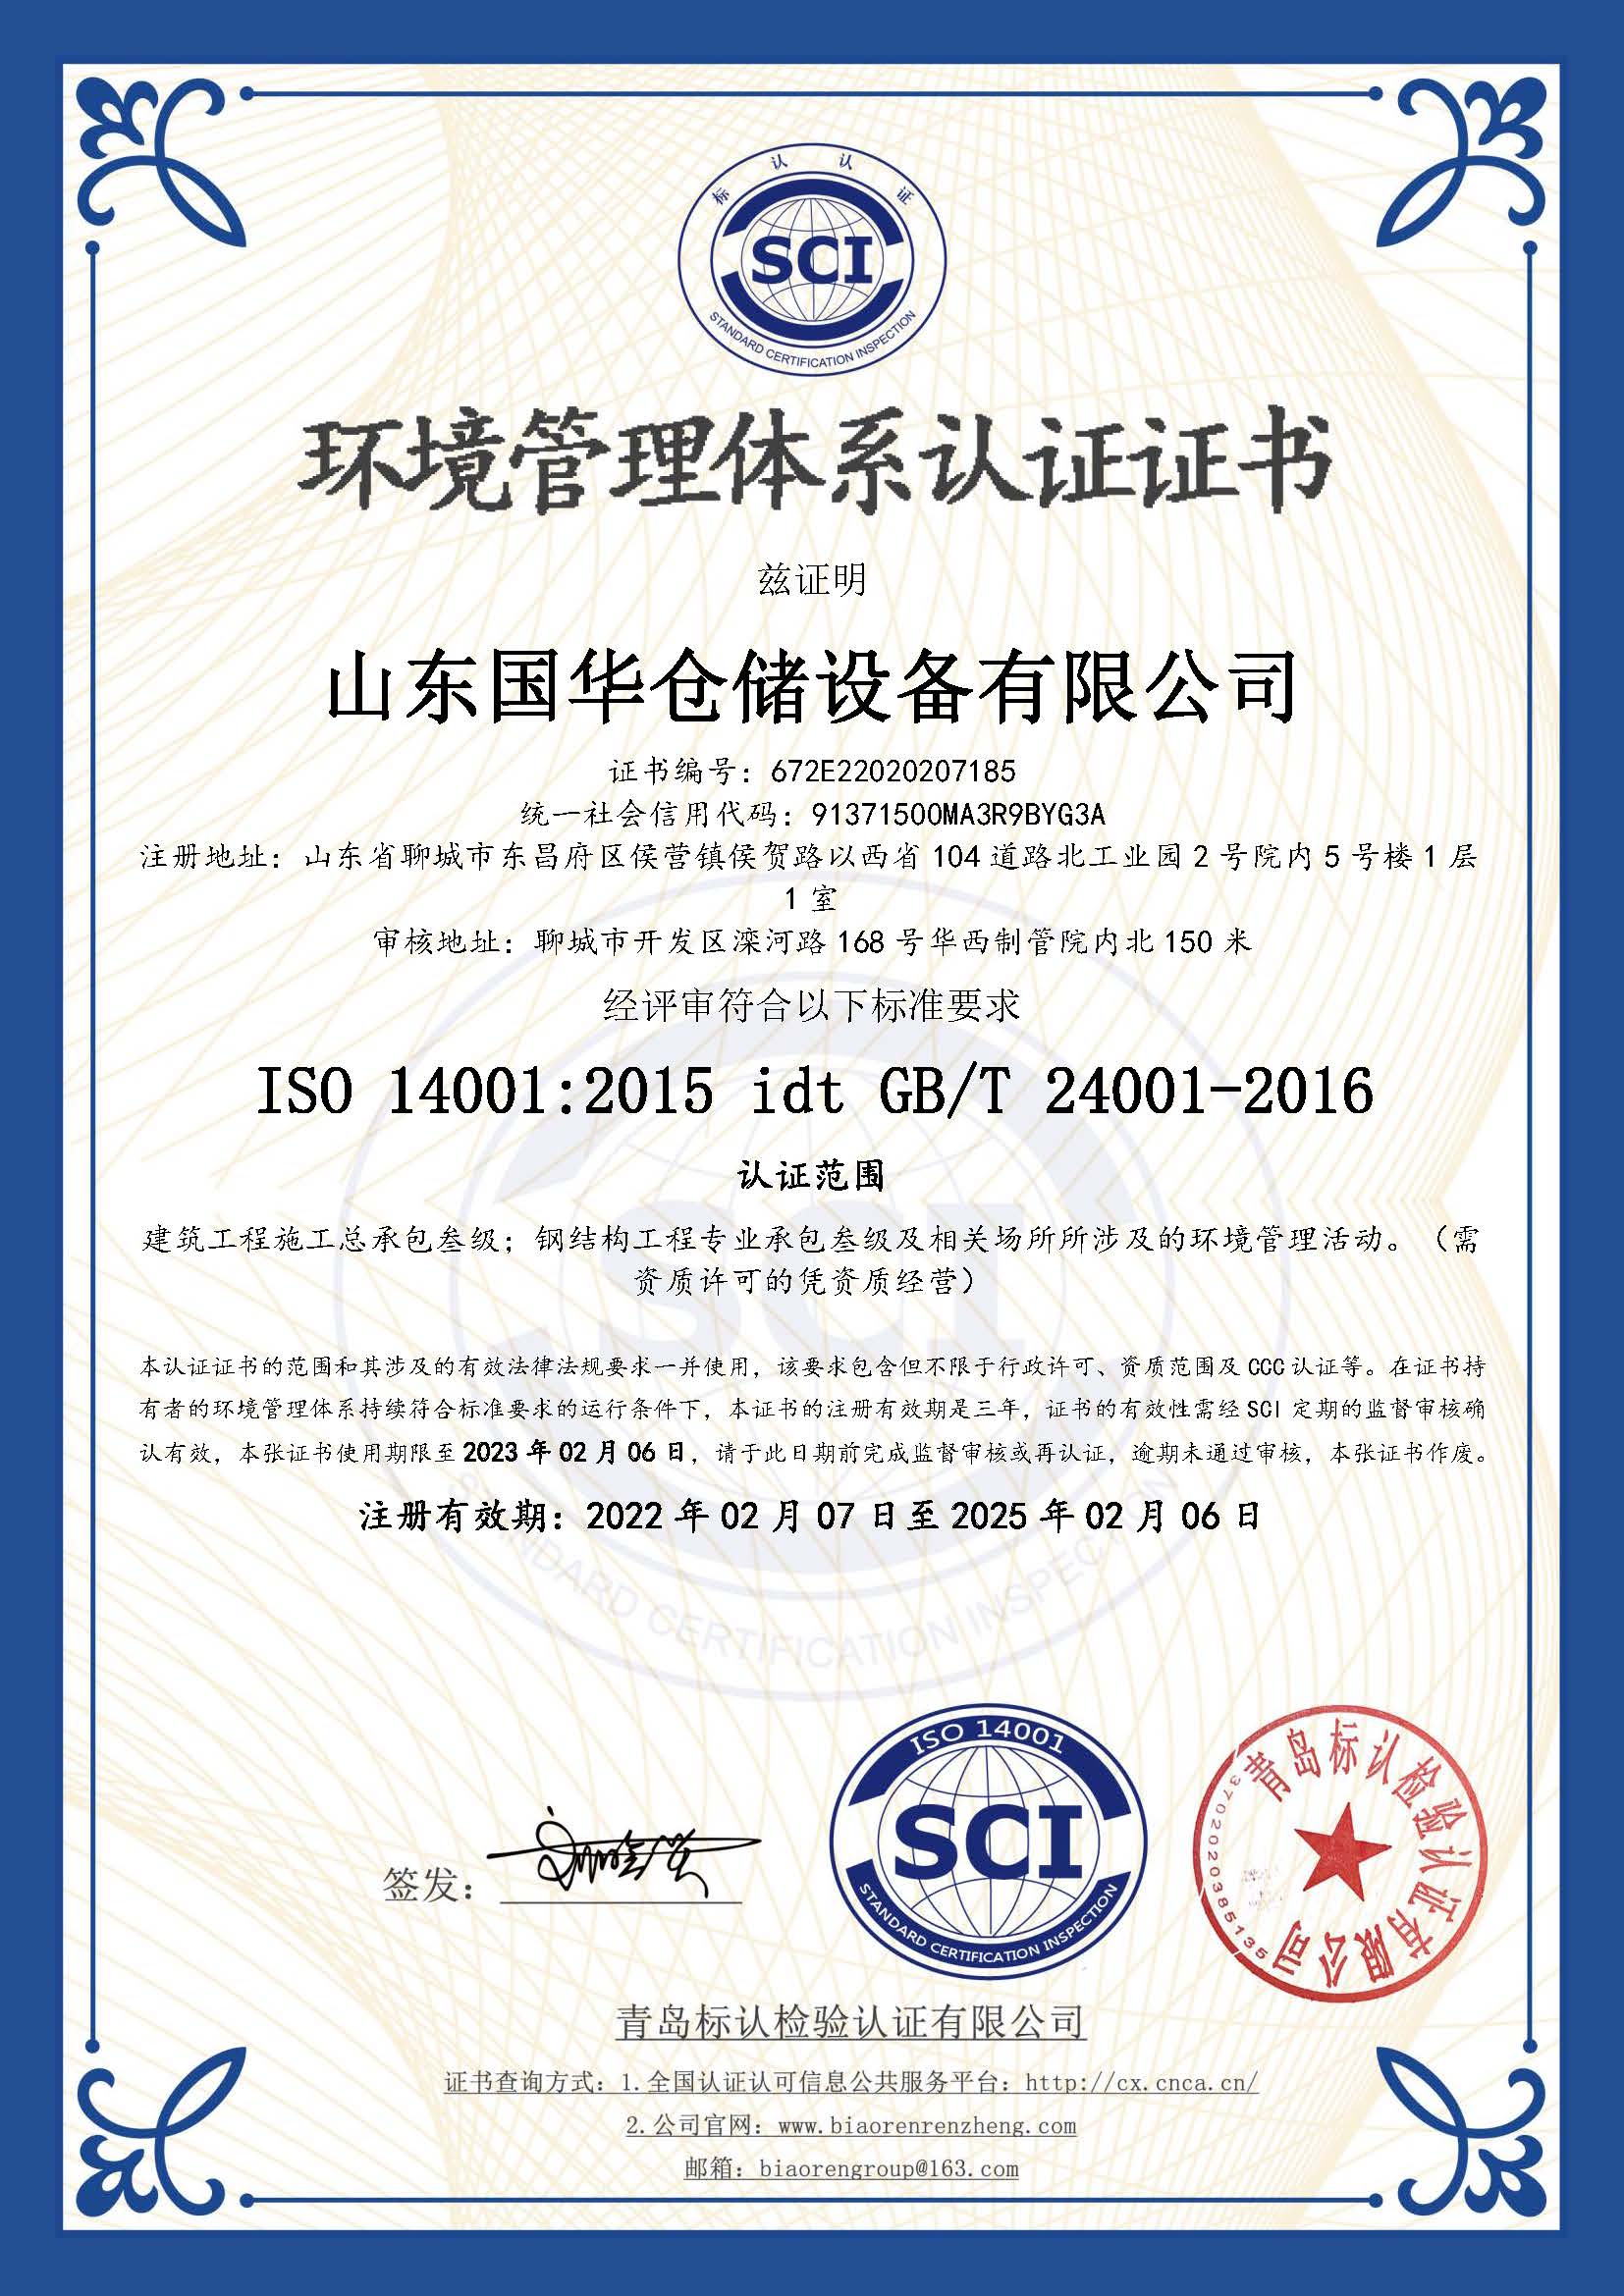 丽江钢板仓环境管理体系认证证书